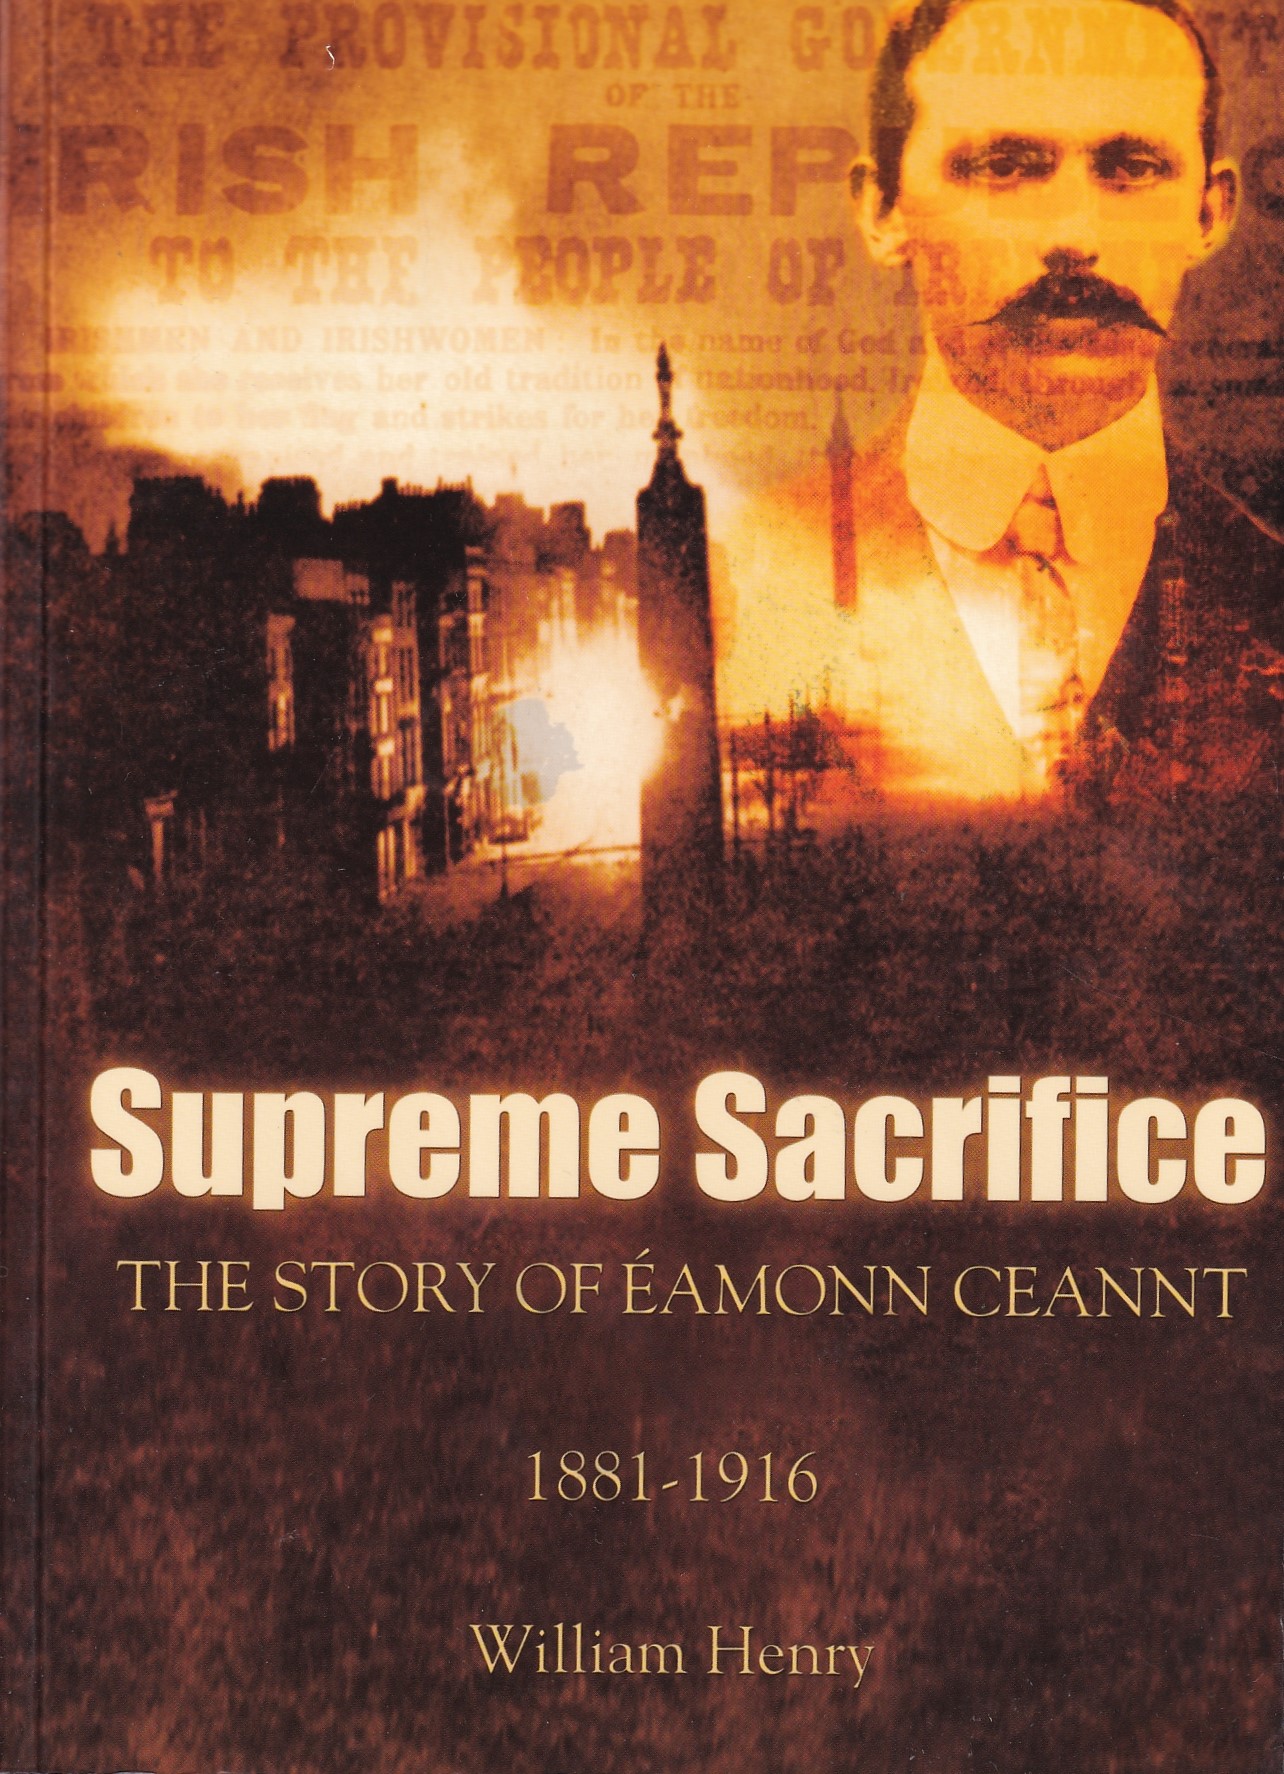 Supreme Sacrifice: The Story of Eamonn Ceannt, 1881-1916 by William Henry and Eamon Ó Cuív